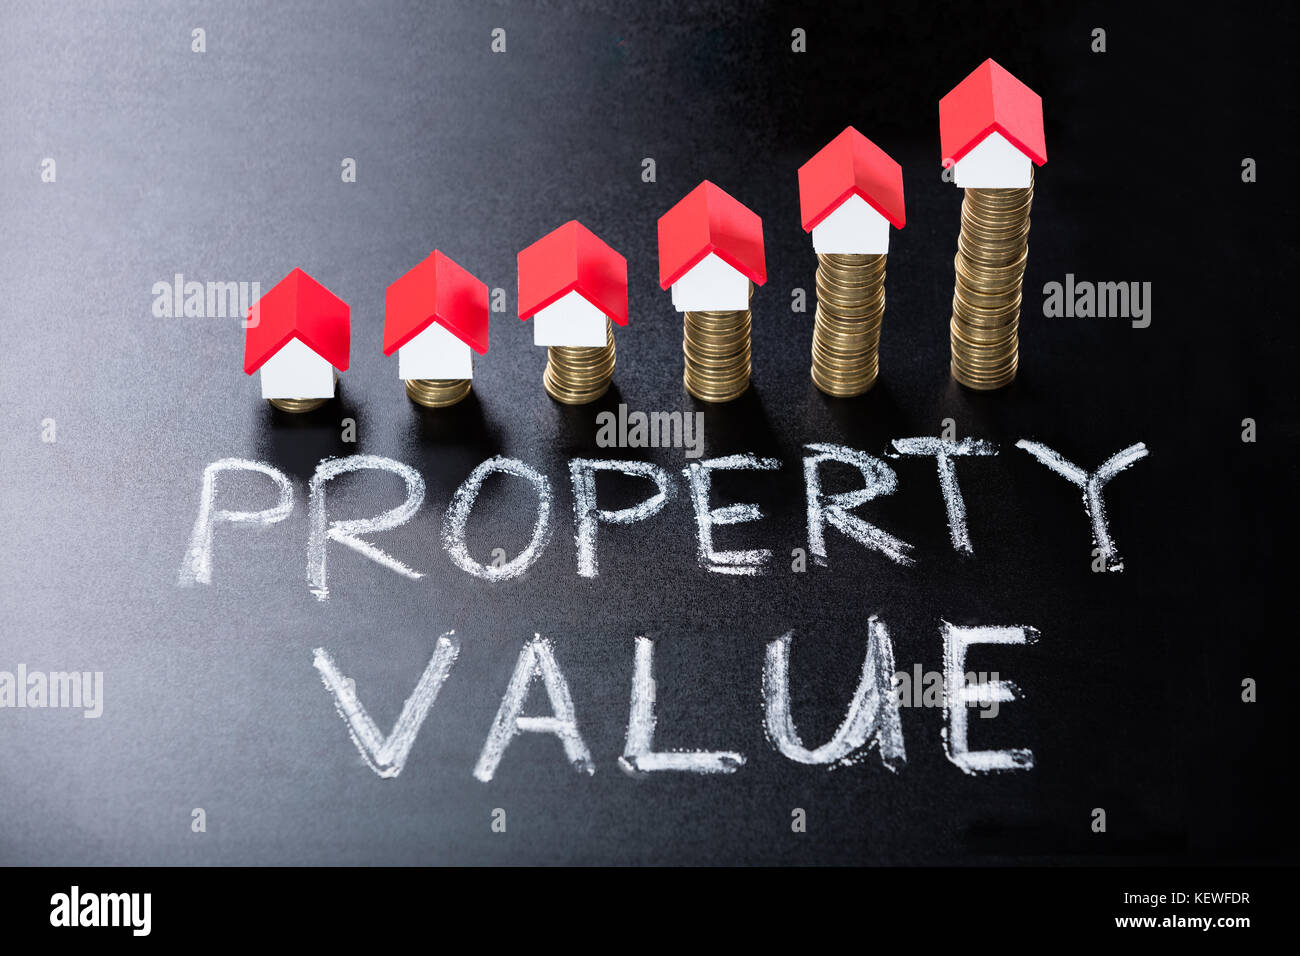 Modelos de la casa de monedas apiladas que muestra el valor de la propiedad concepto sobre blackboard Foto de stock